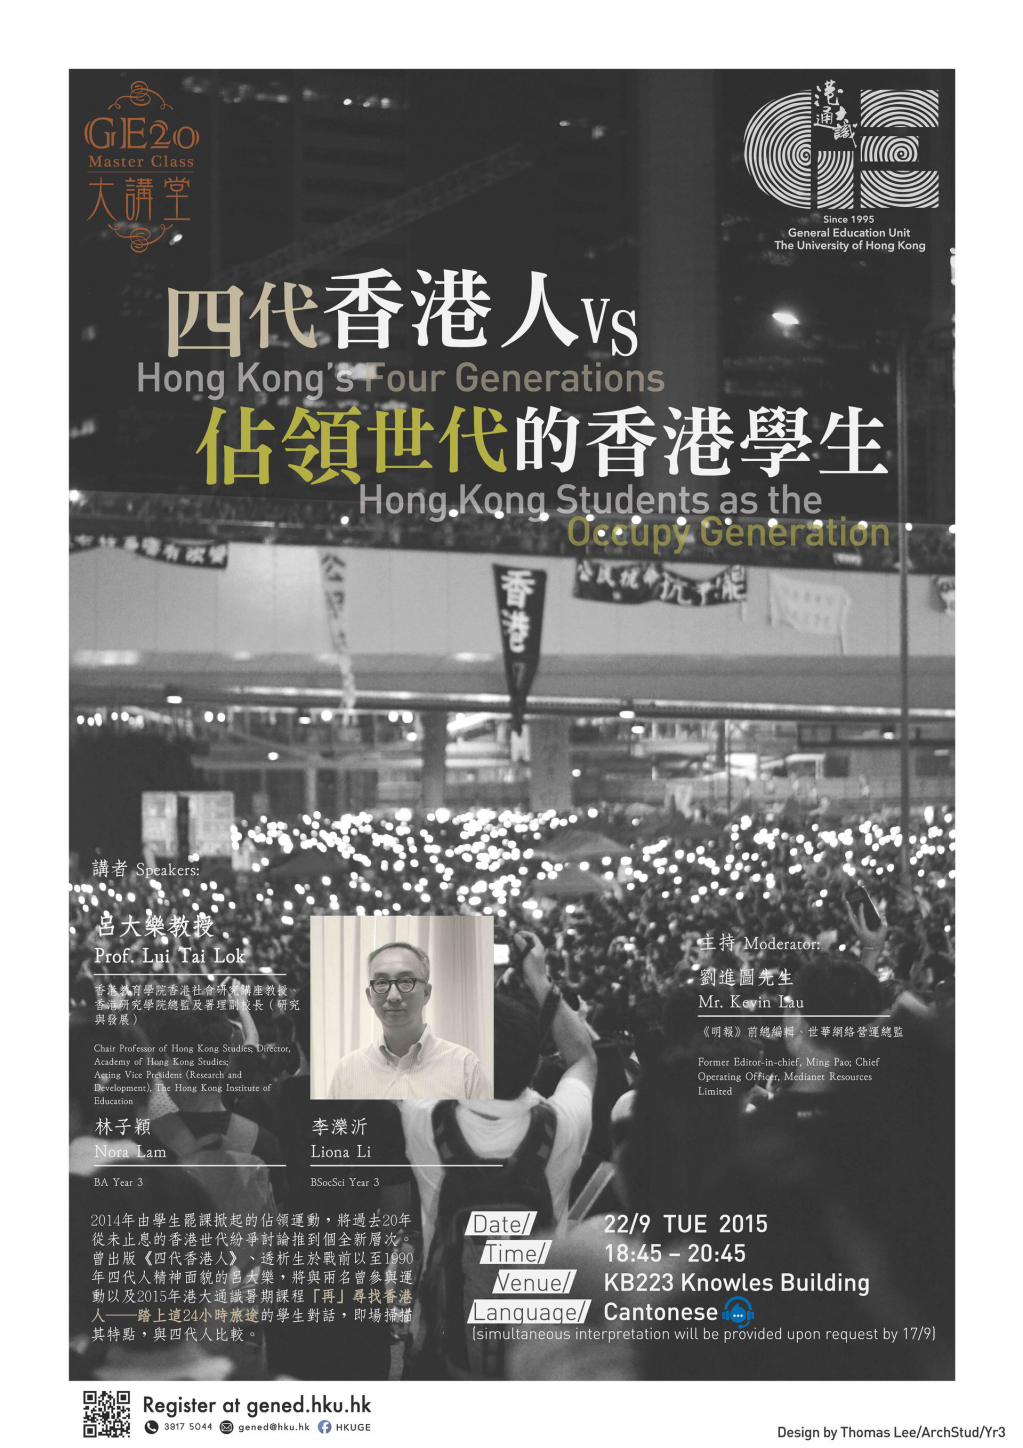 四代香港人VS佔領世代的香港學生 Hong Kong’s Four Generations VS Hong Kong Students as the Occupy Generation